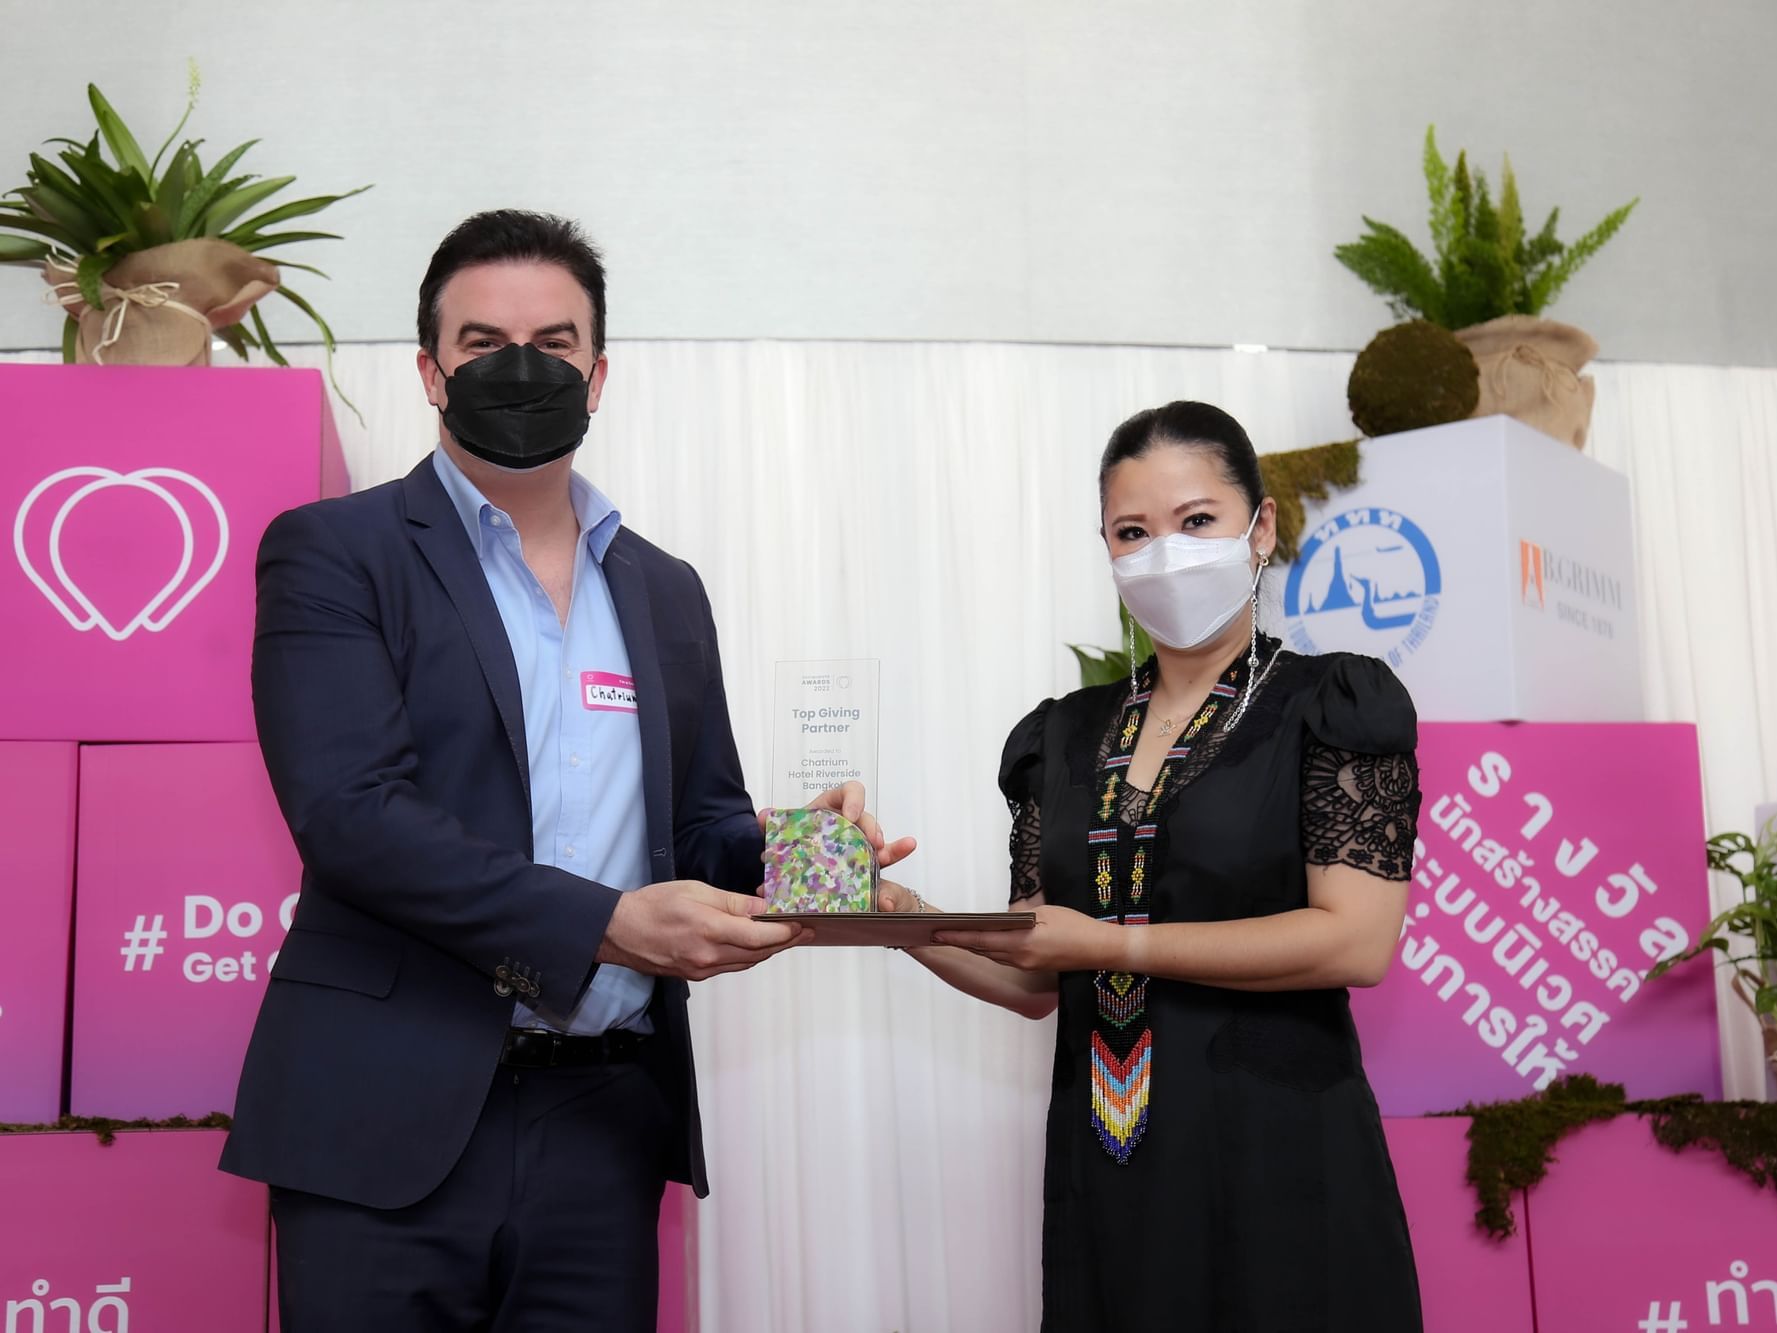 Presenting Socialgiver Awards 2022 at Chatrium Hotel Bangkok